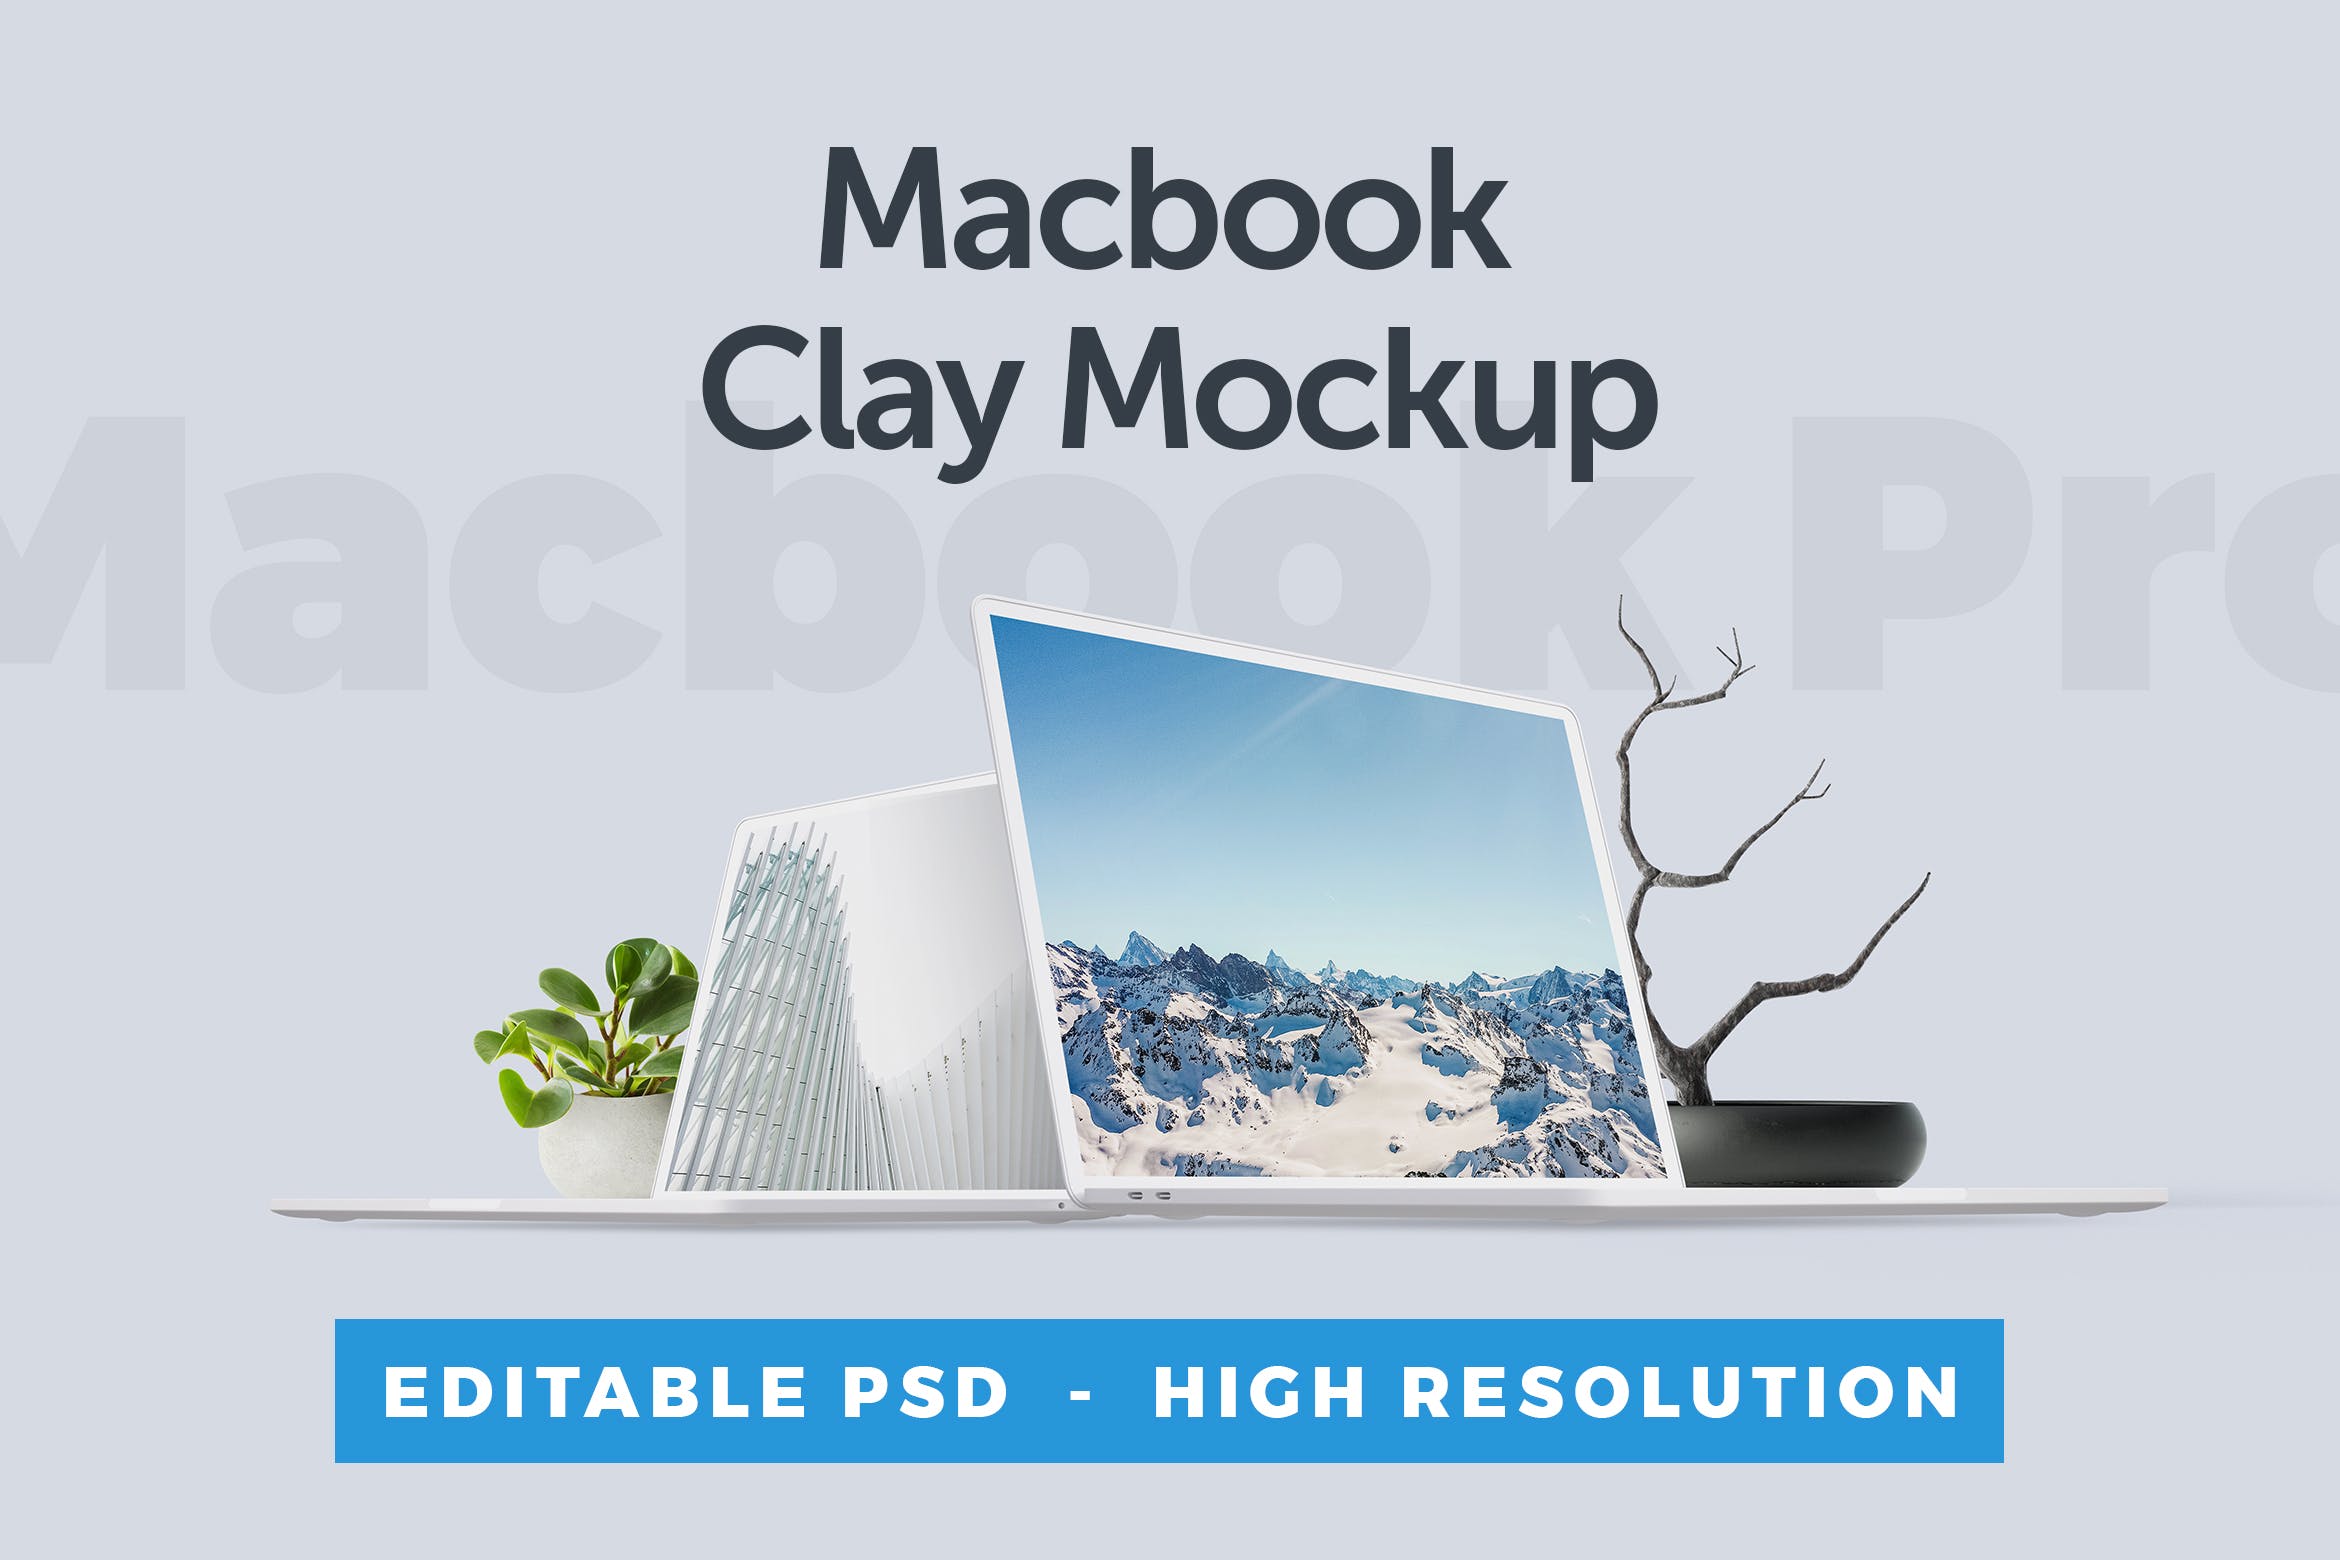 MacBook笔记本电脑屏幕演示非凡图库精选样机 Macbook Clay Mockup插图